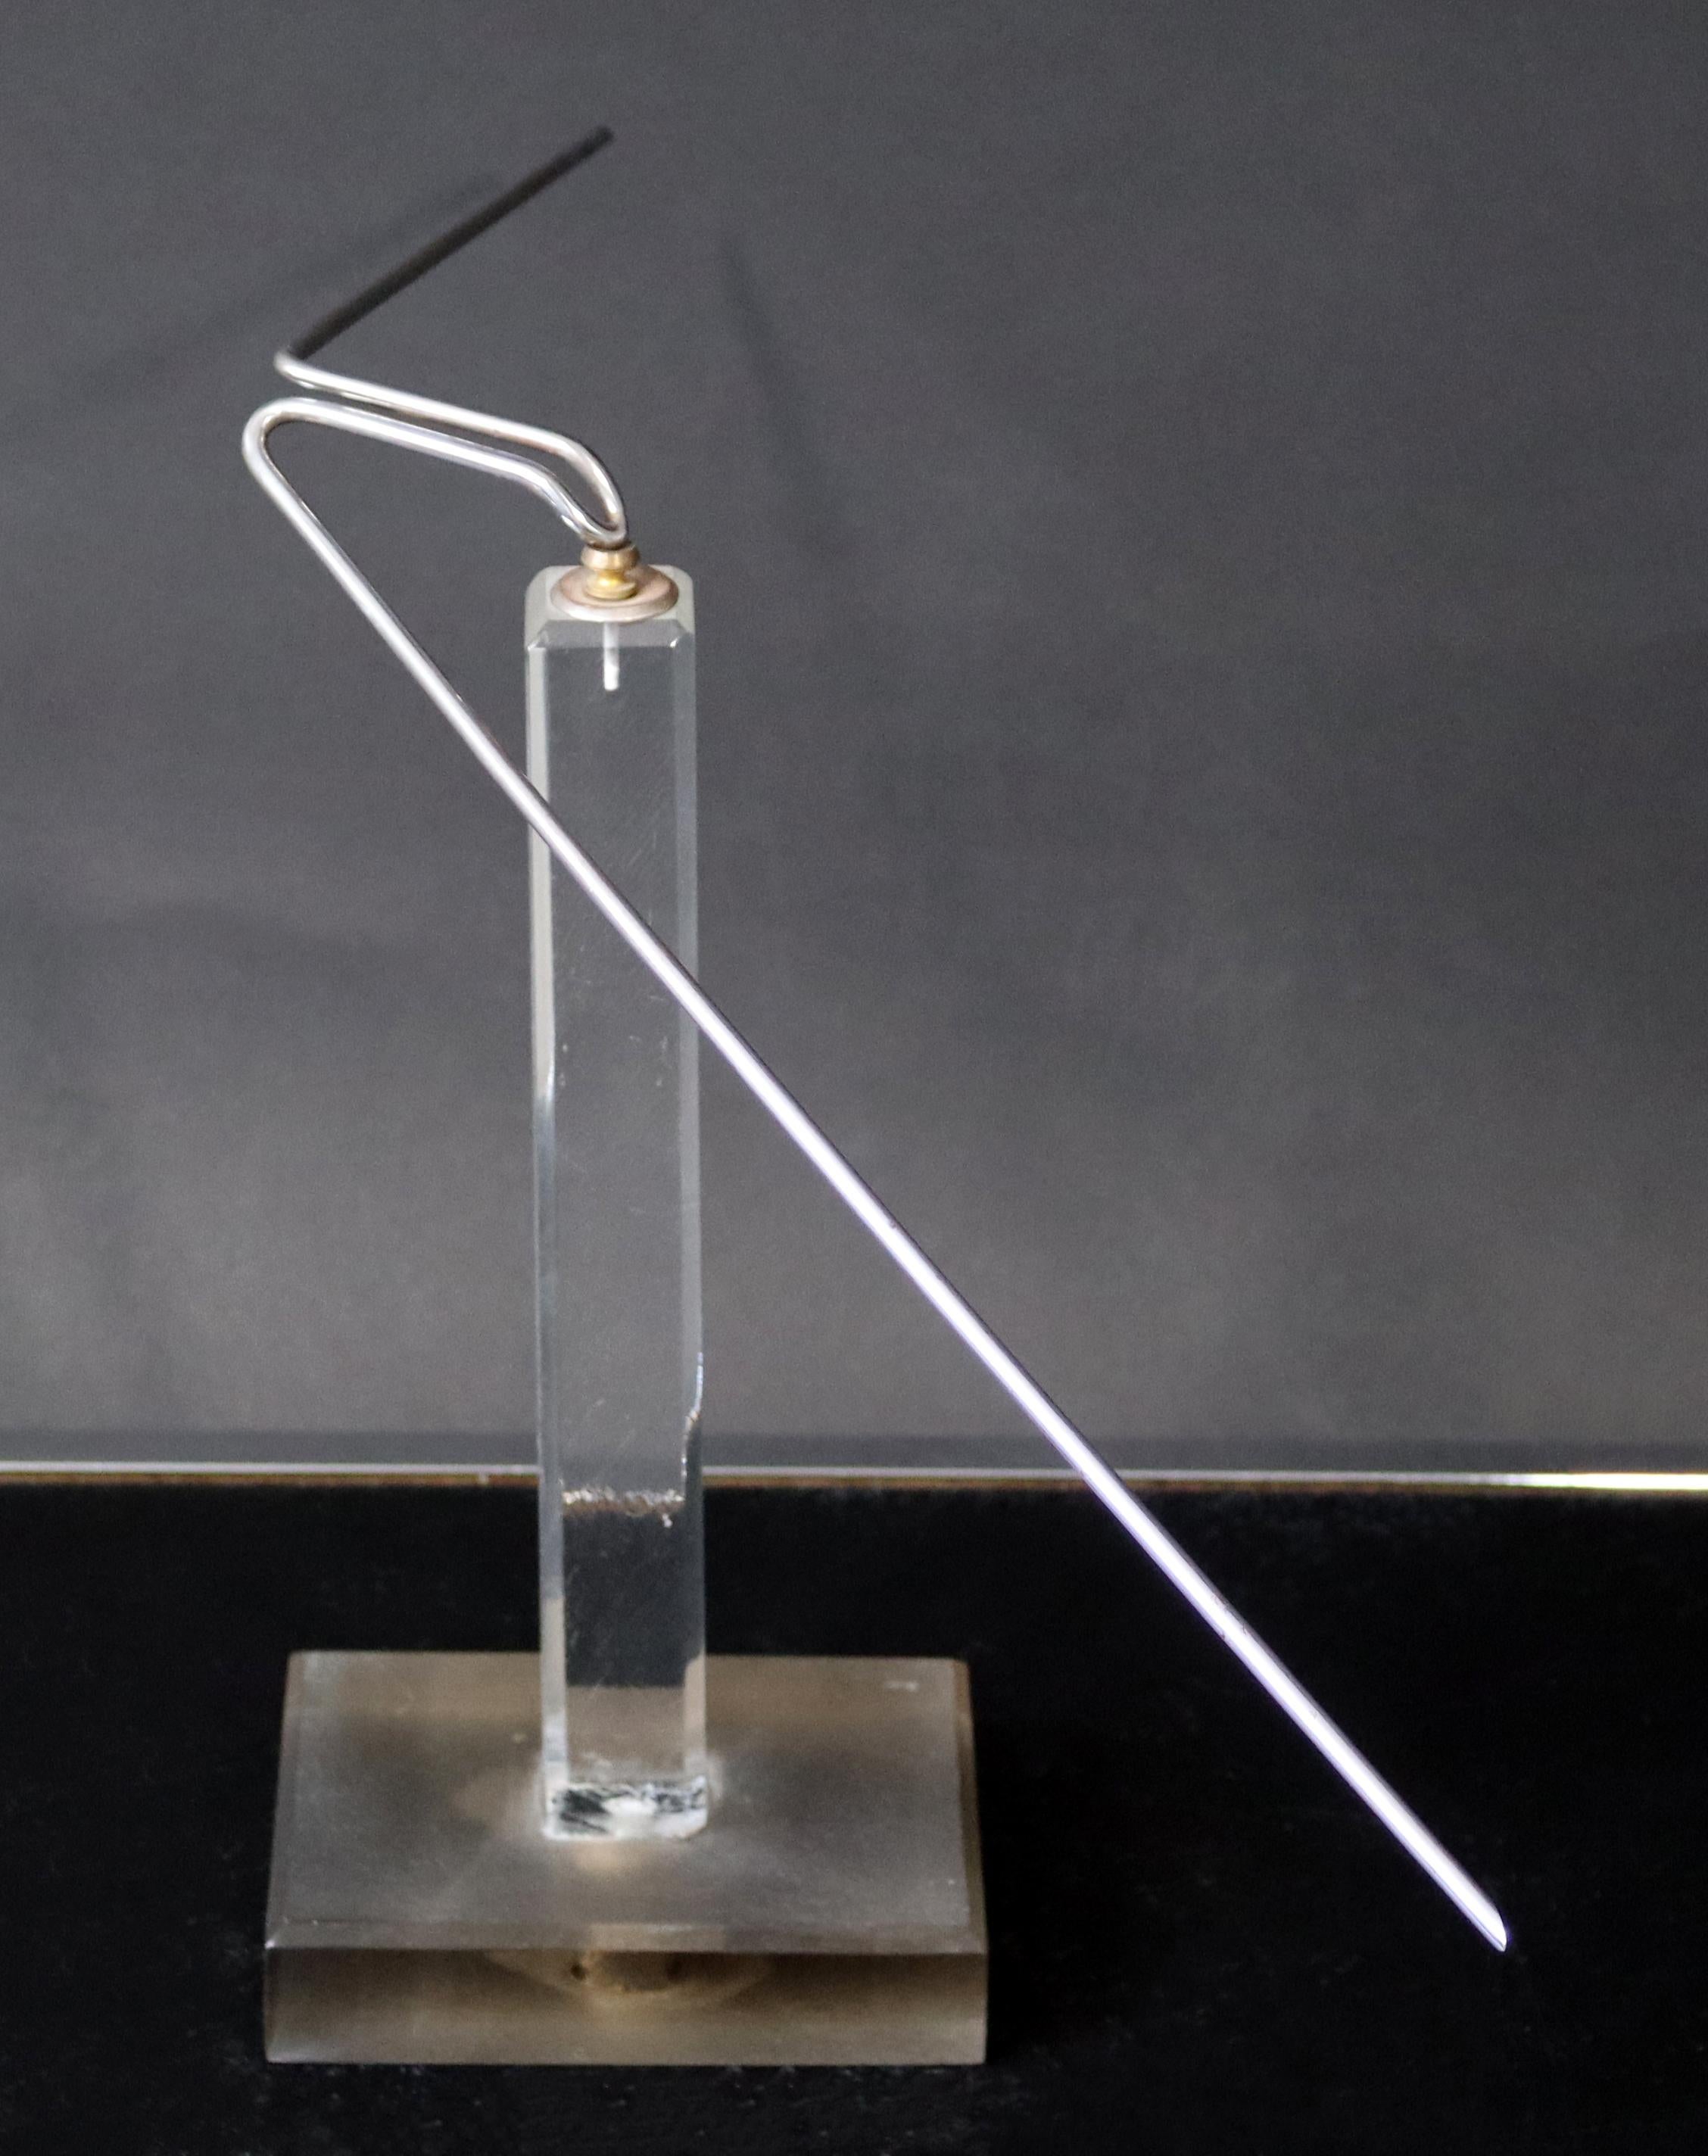 Nous vous proposons une fascinante sculpture cinétique d'équilibre en fil métallique signée Nani (12 x 21). James Nani (1926-2016) a été un artiste de Détroit pendant plus de 50 ans et est connu internationalement pour ses sculptures en métal et en